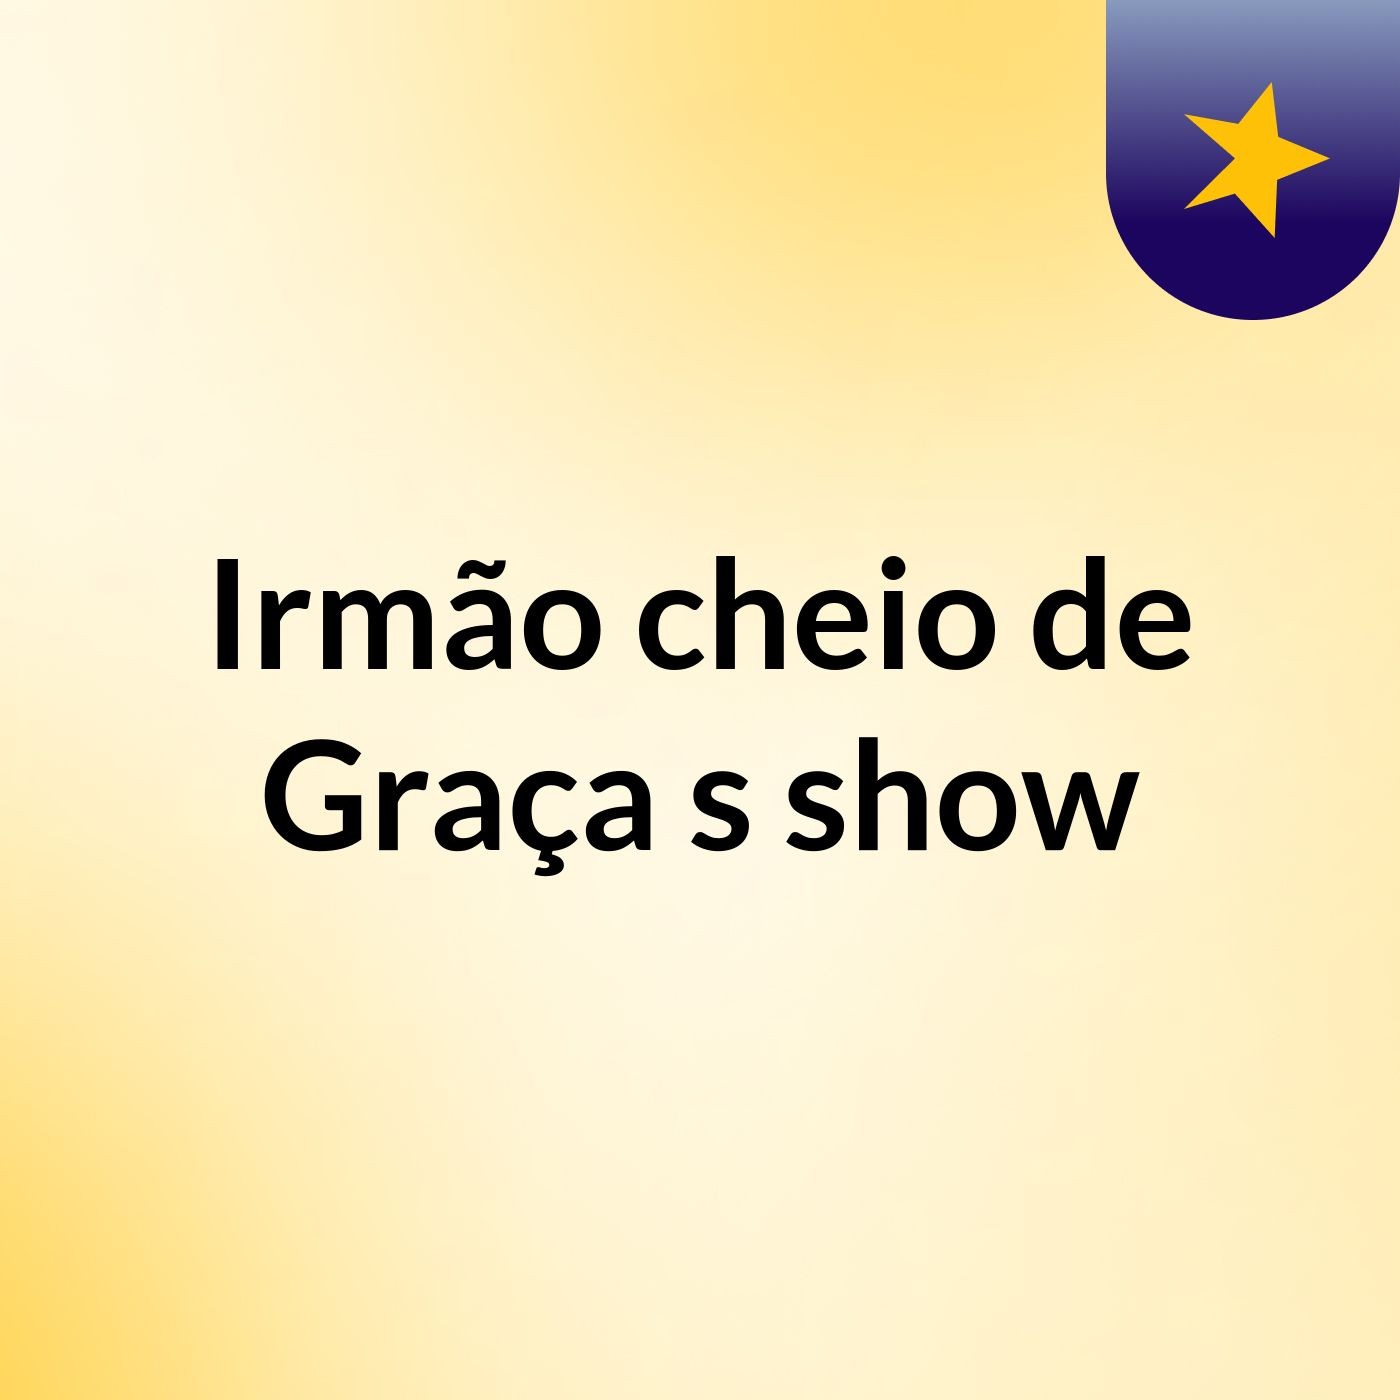 Irmão cheio de Graça's show